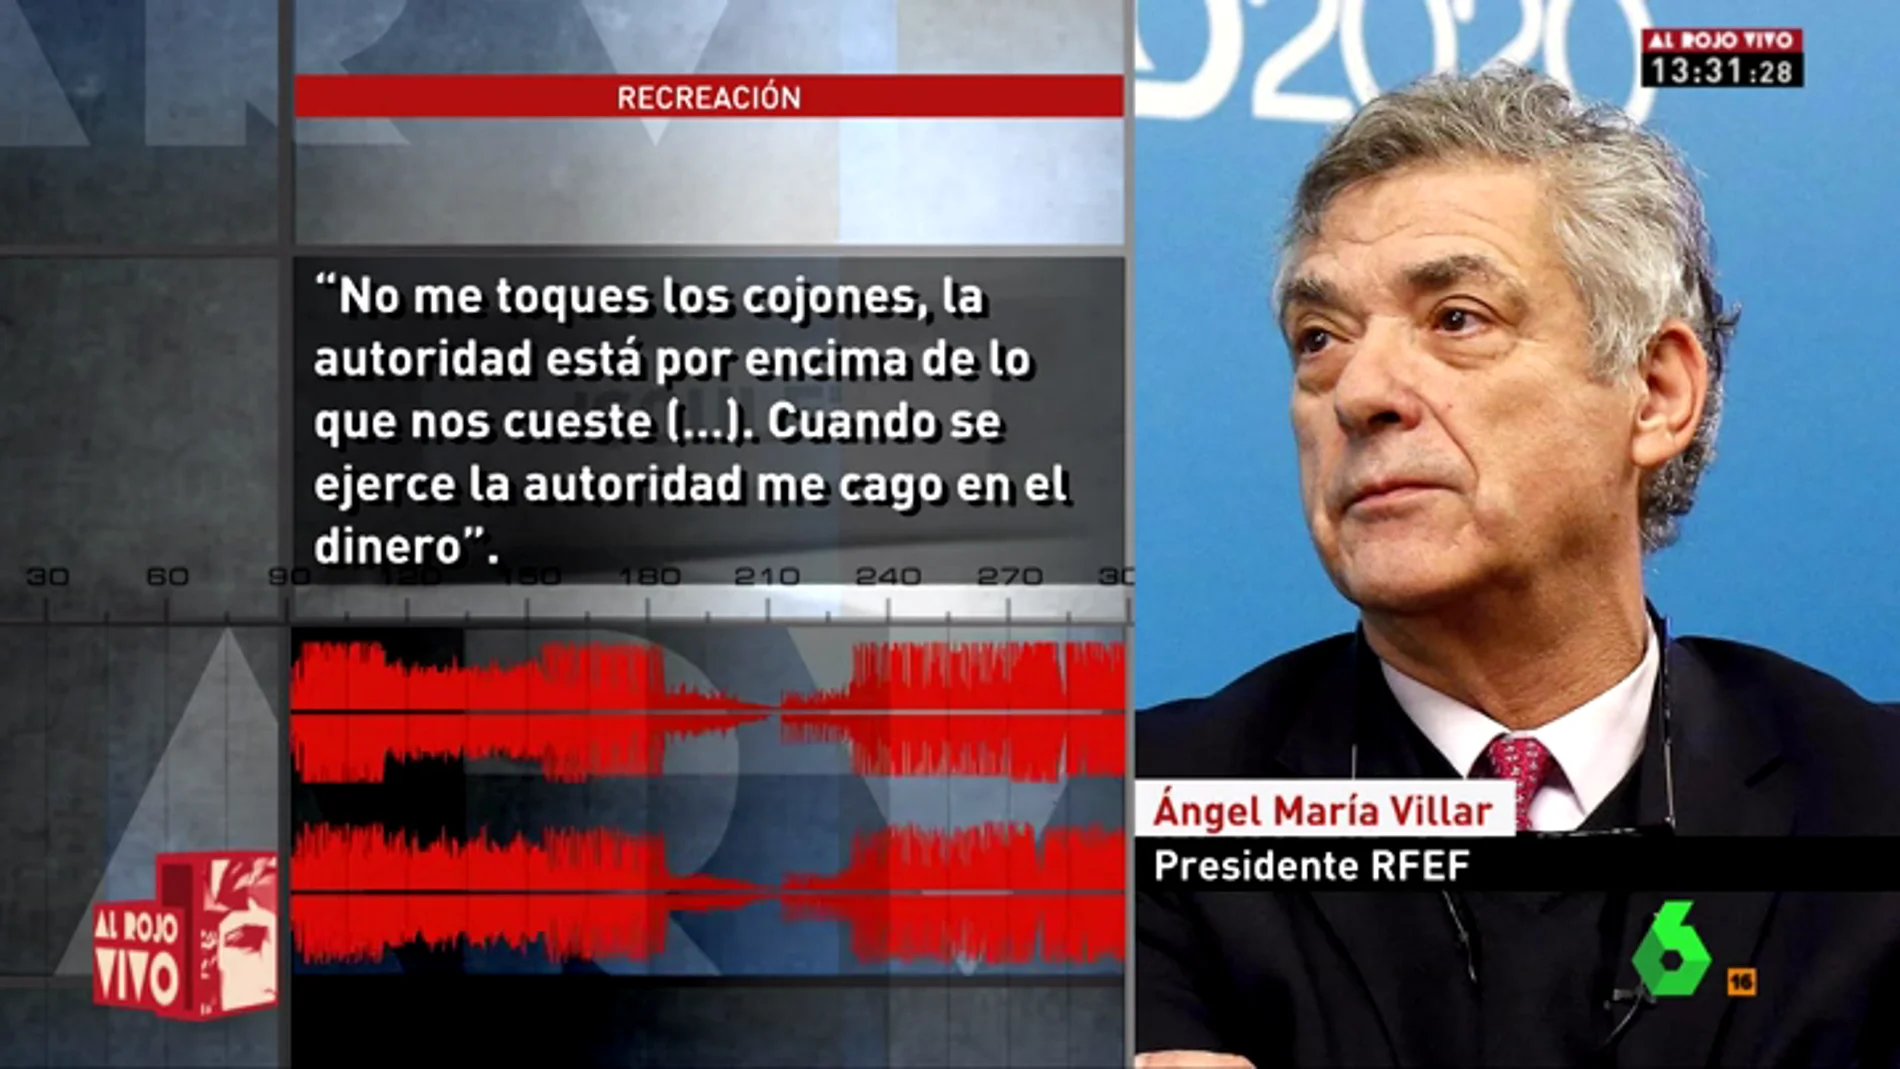 Orgía de corrupción en la RFEF de Villar: "No me toques los cojones. Cuando se ejerce la autoridad me cago en el dinero"